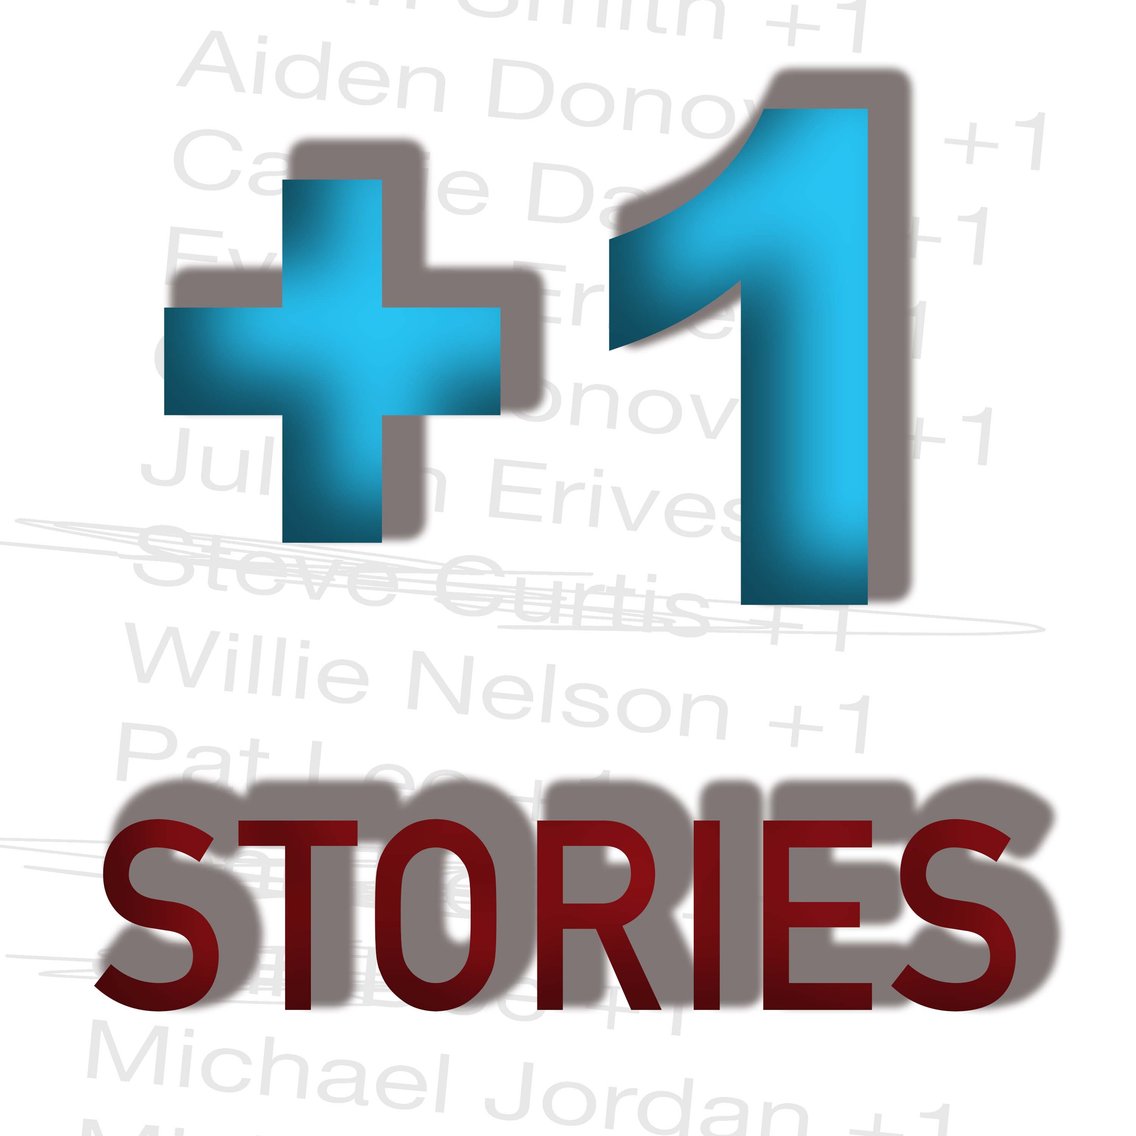 +1 Stories - immagine di copertina
